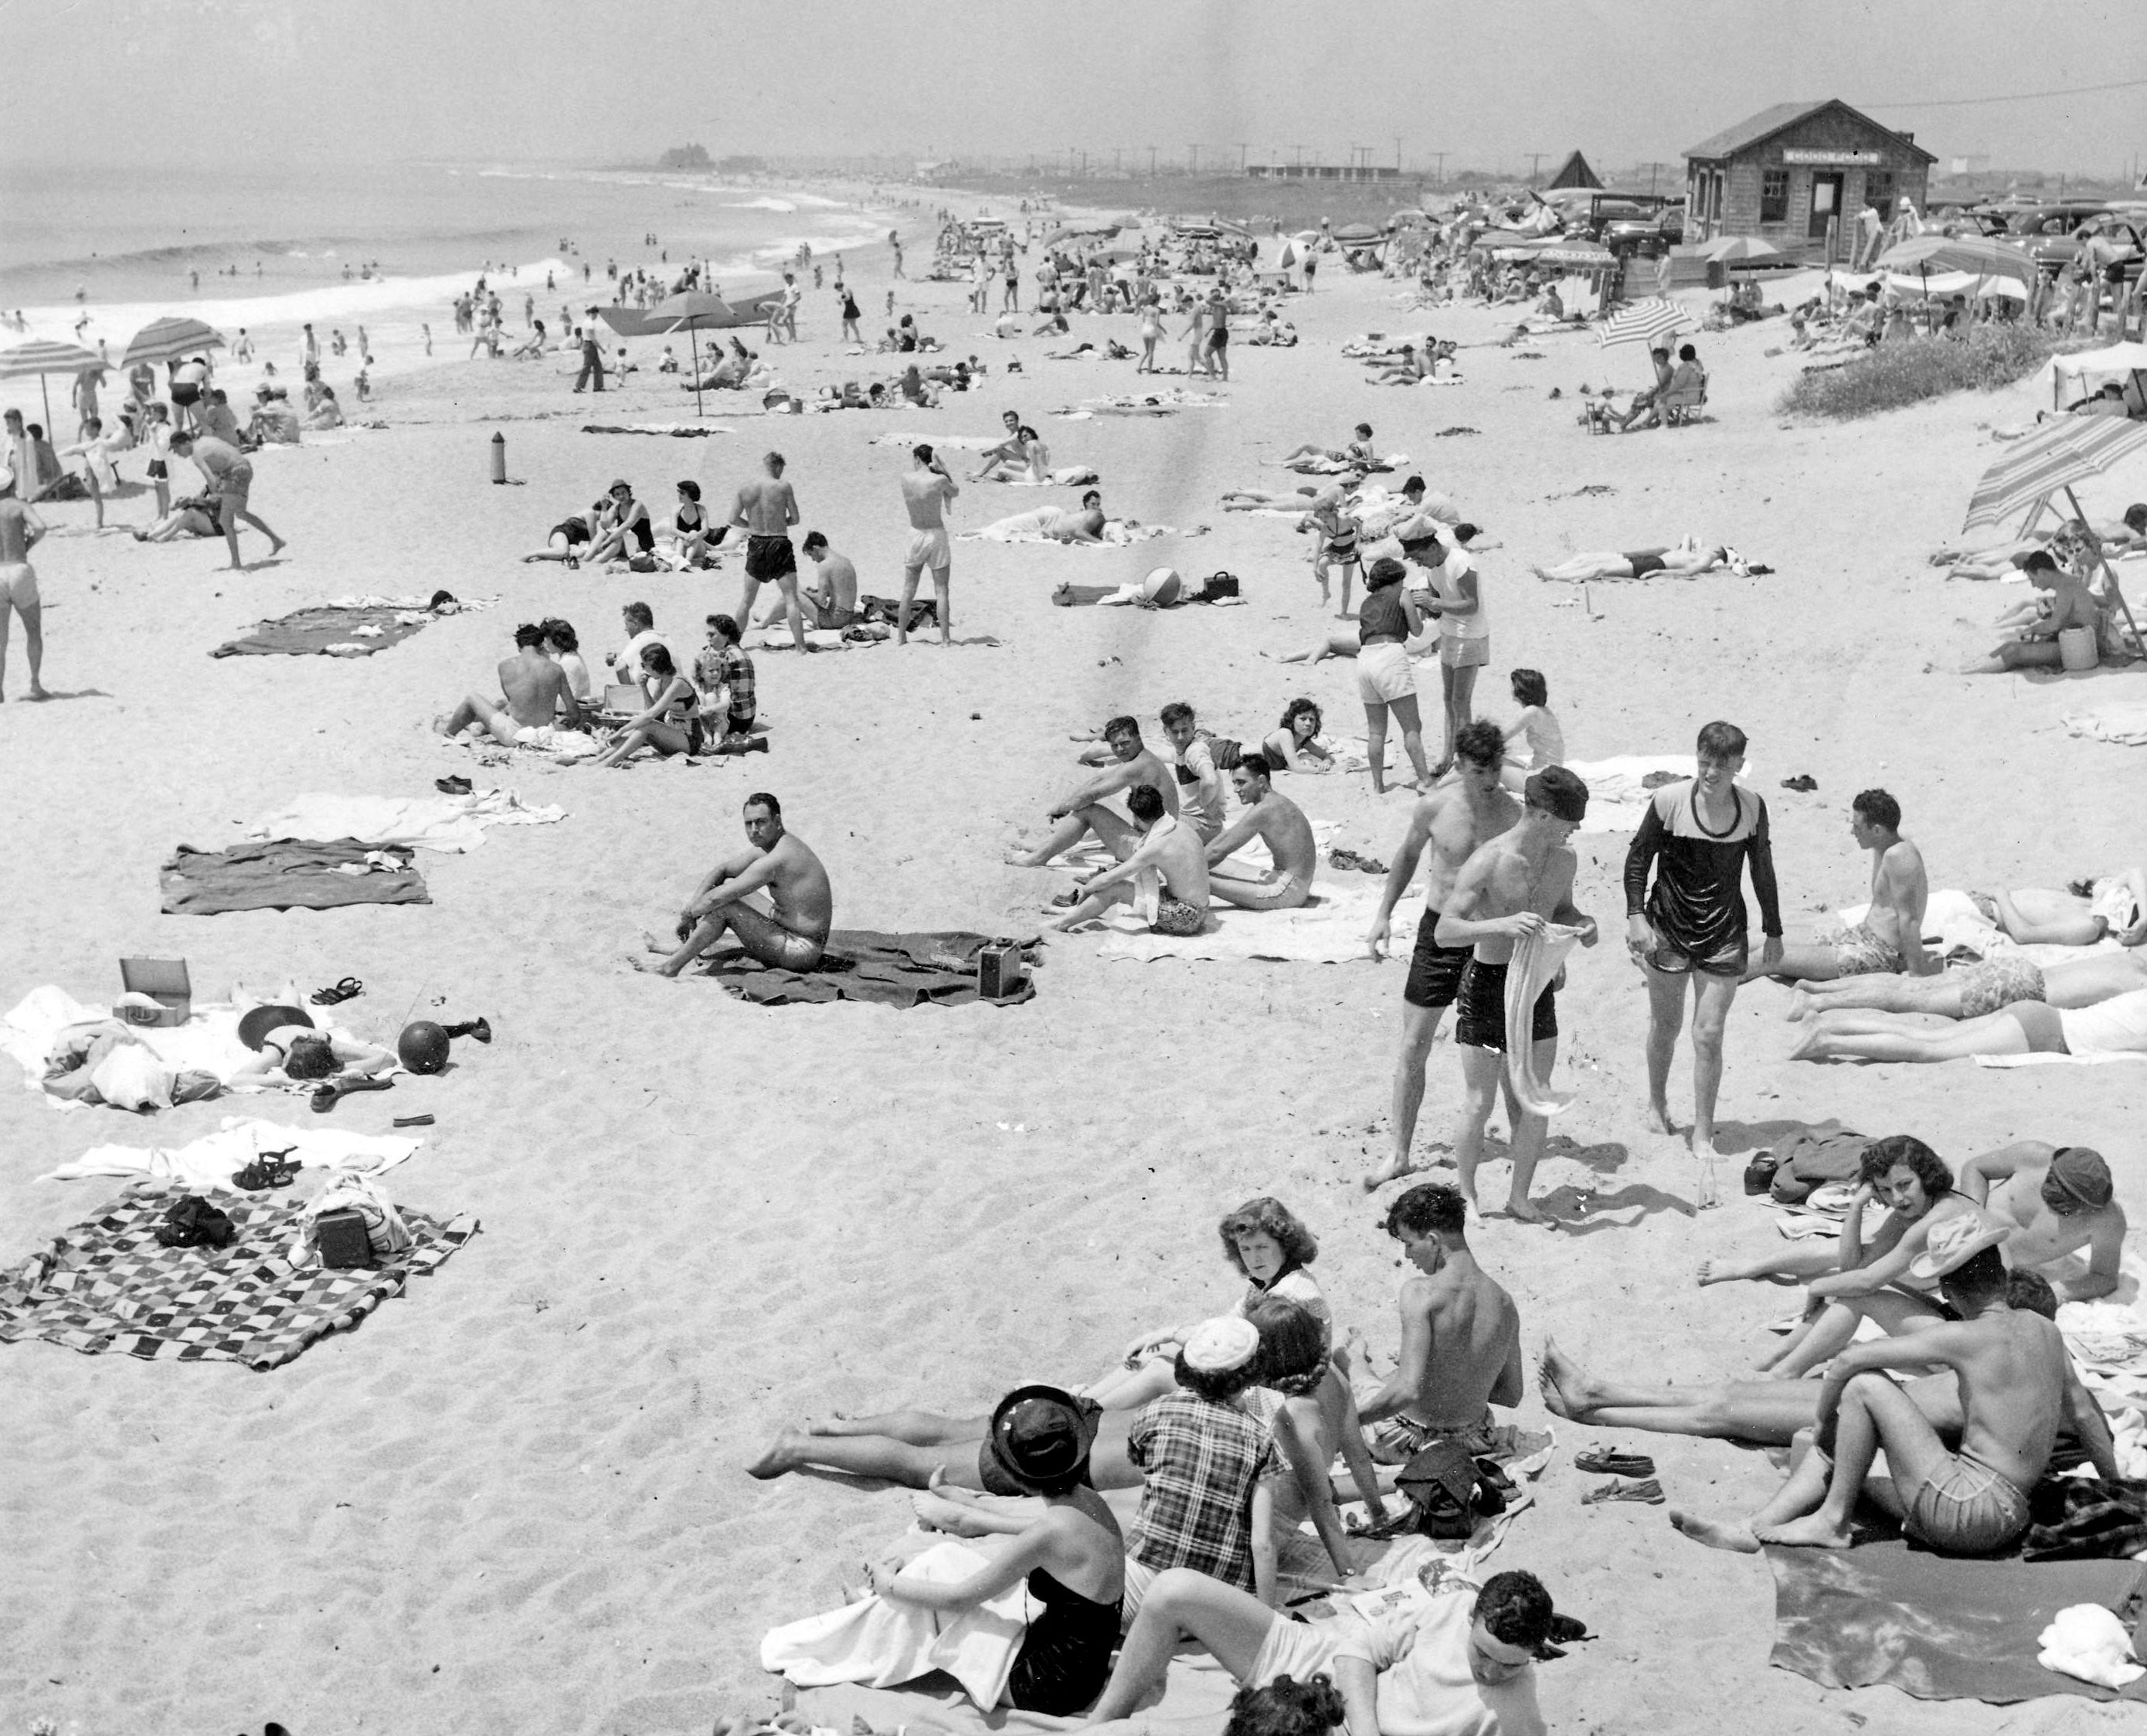 Matunuck beach, South Kingstown, July 3, 1950.